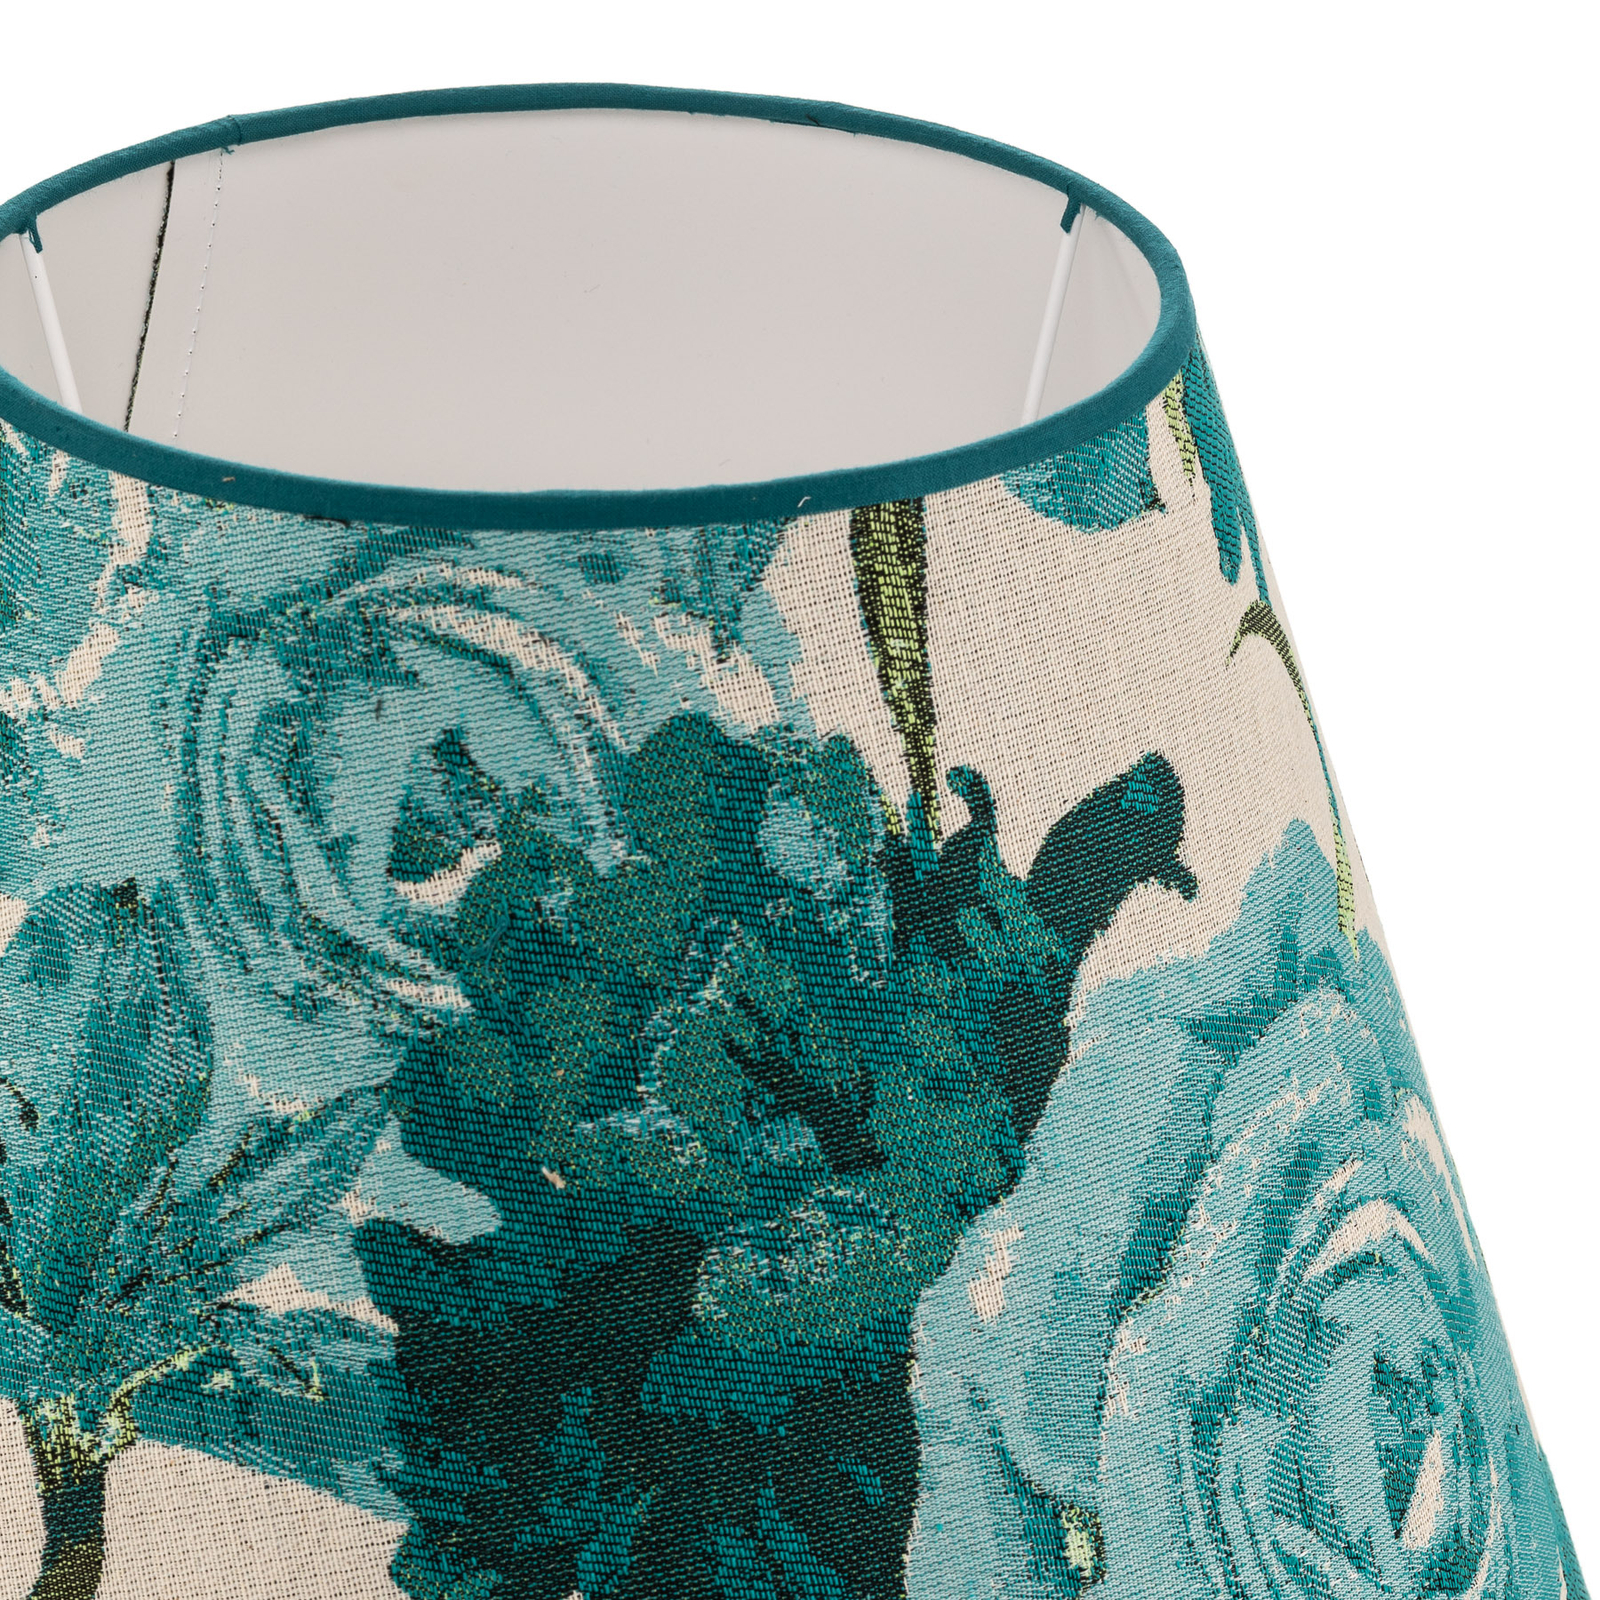 Abajur Sofia Altura 26 cm, padrão floral turquesa